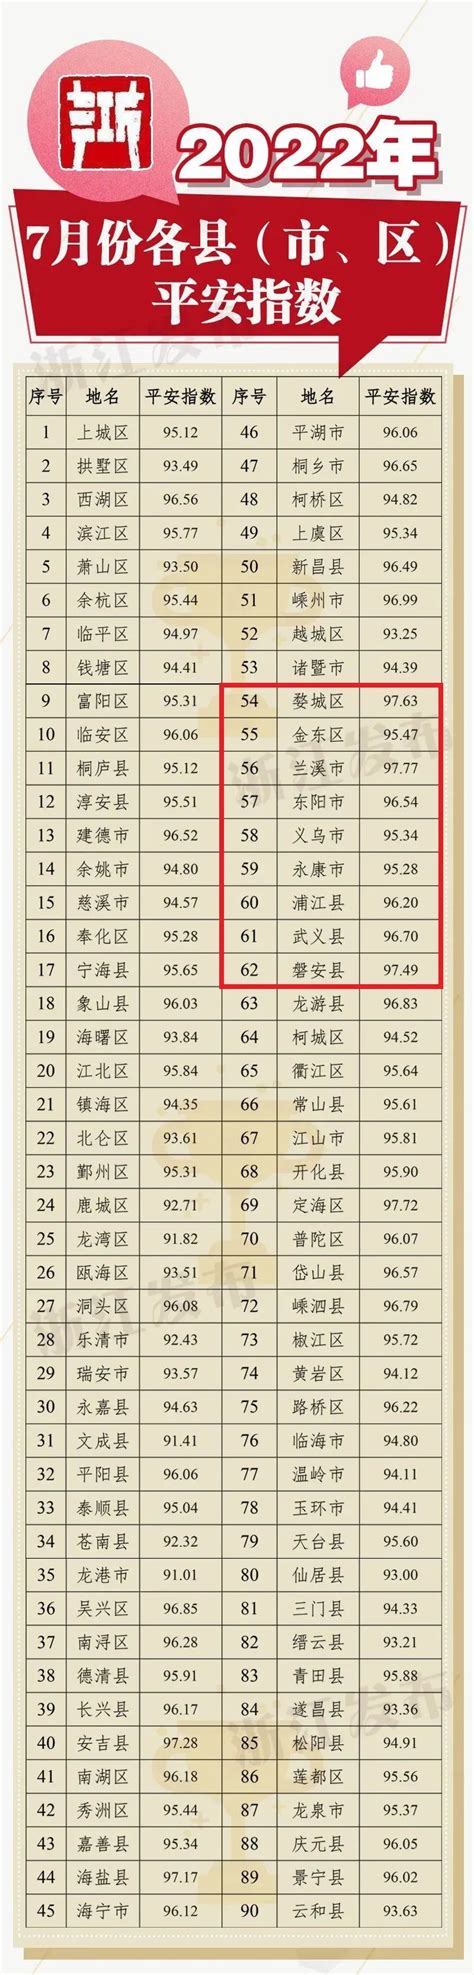 http://cfxt.jhzhjy.cn/金华市初中学业水平考试(中考)成绩查询 - 学参网